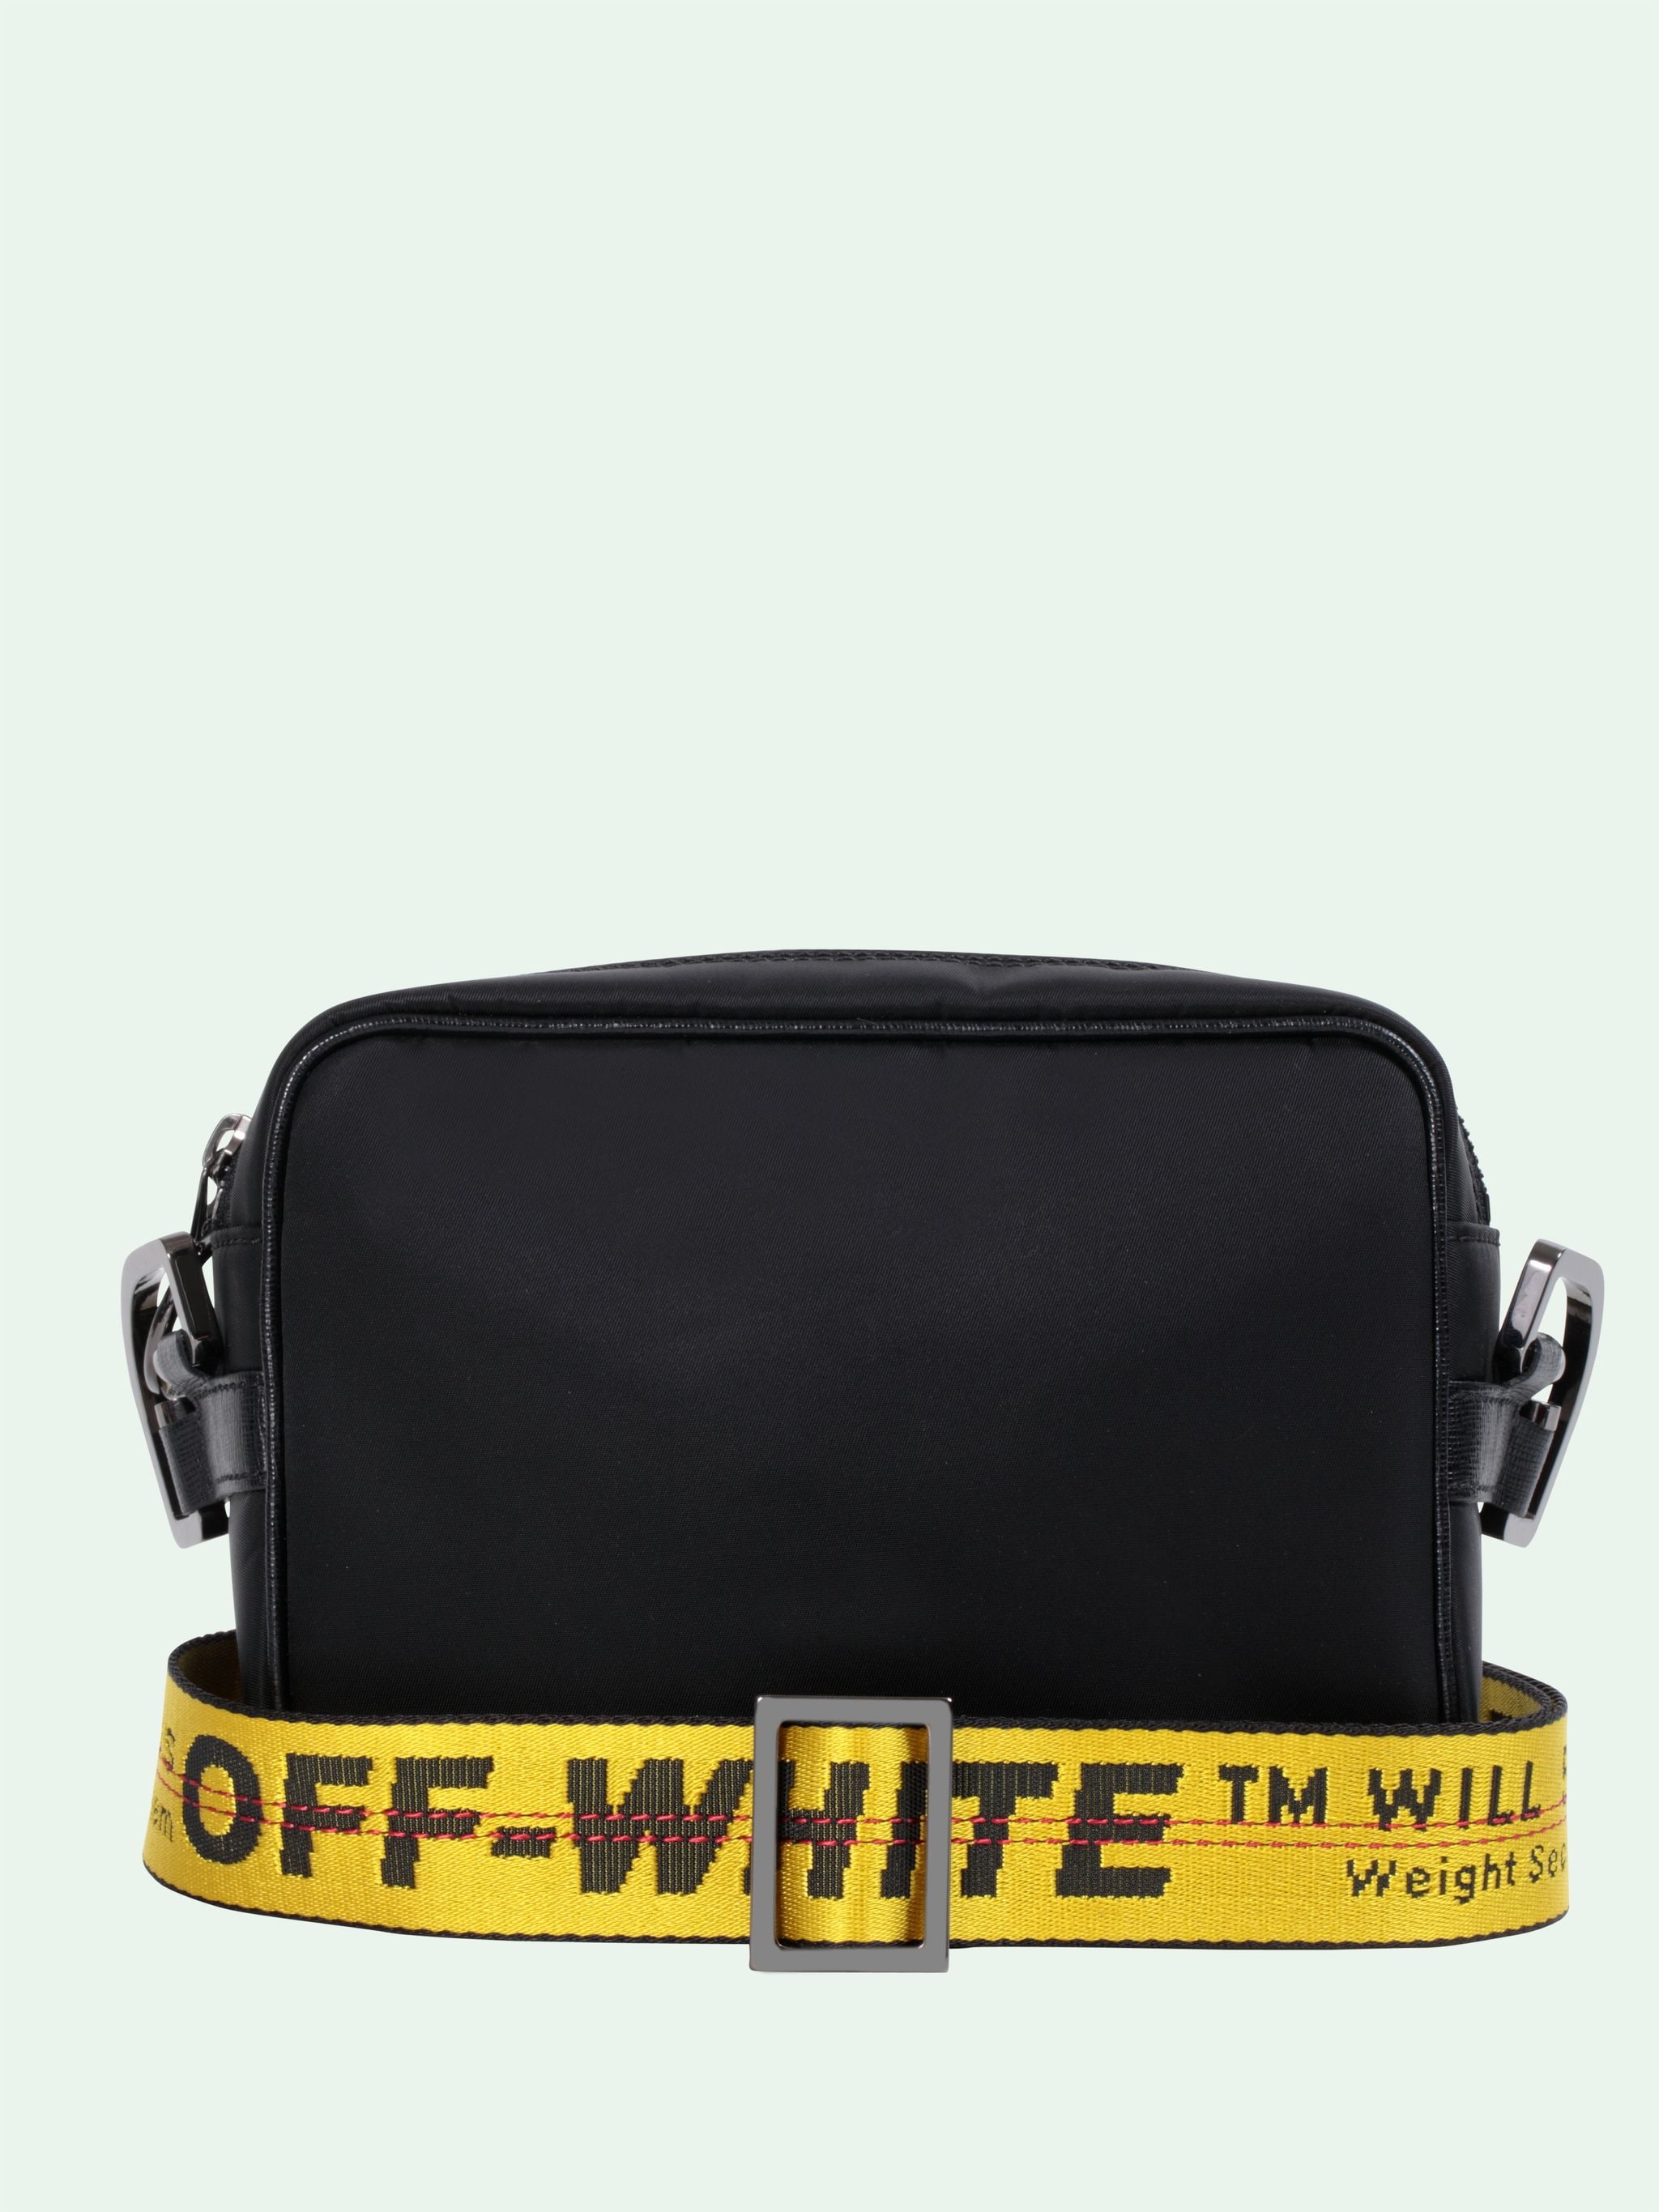 off white purse cheap